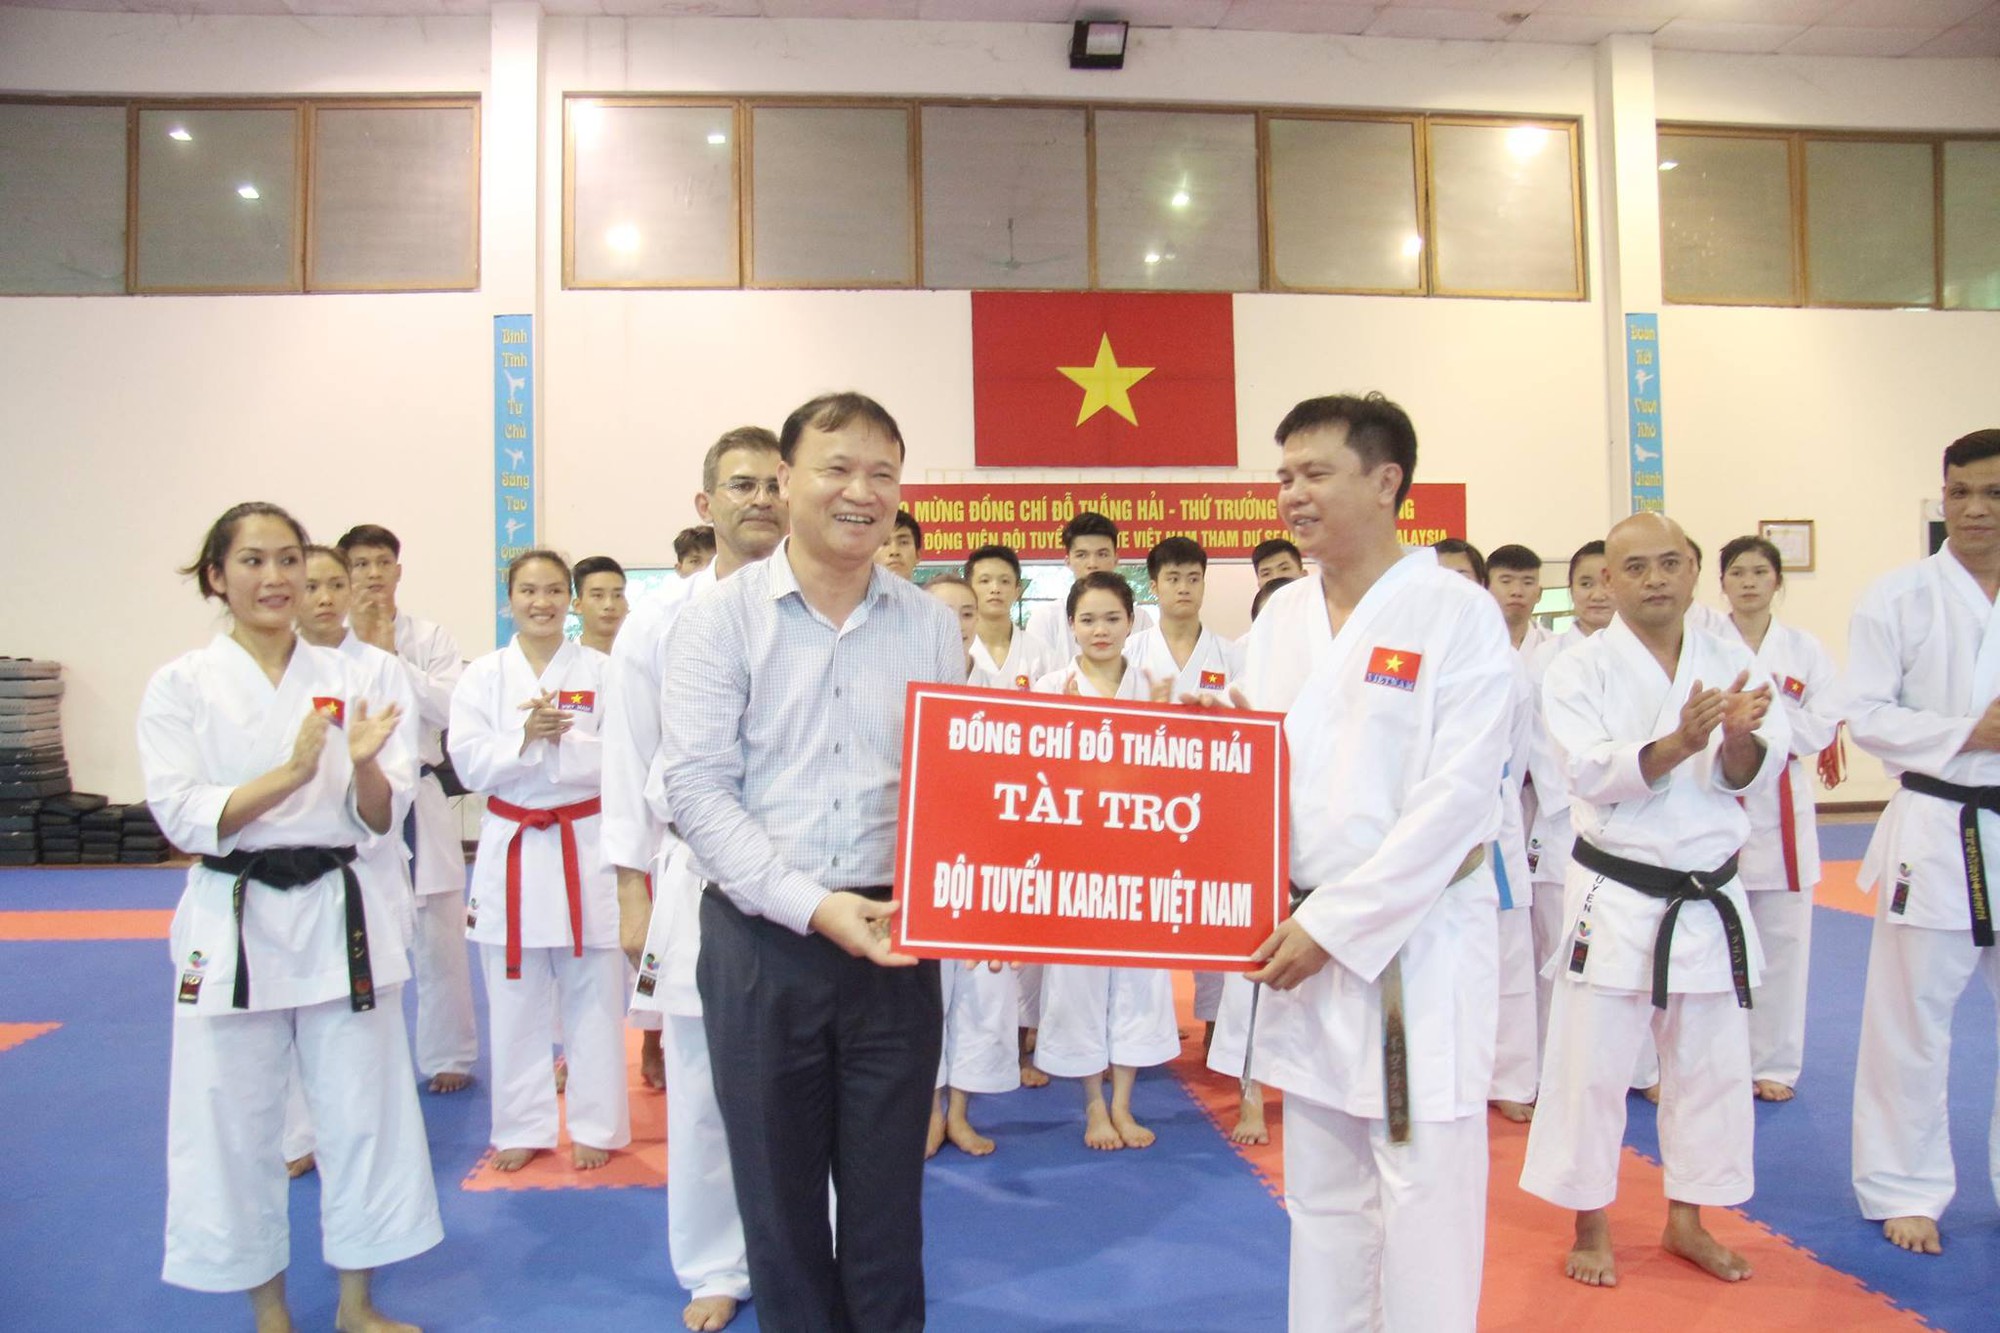 đội tuyển karatedo Việt Nam đã nhận được sự động viên lớn